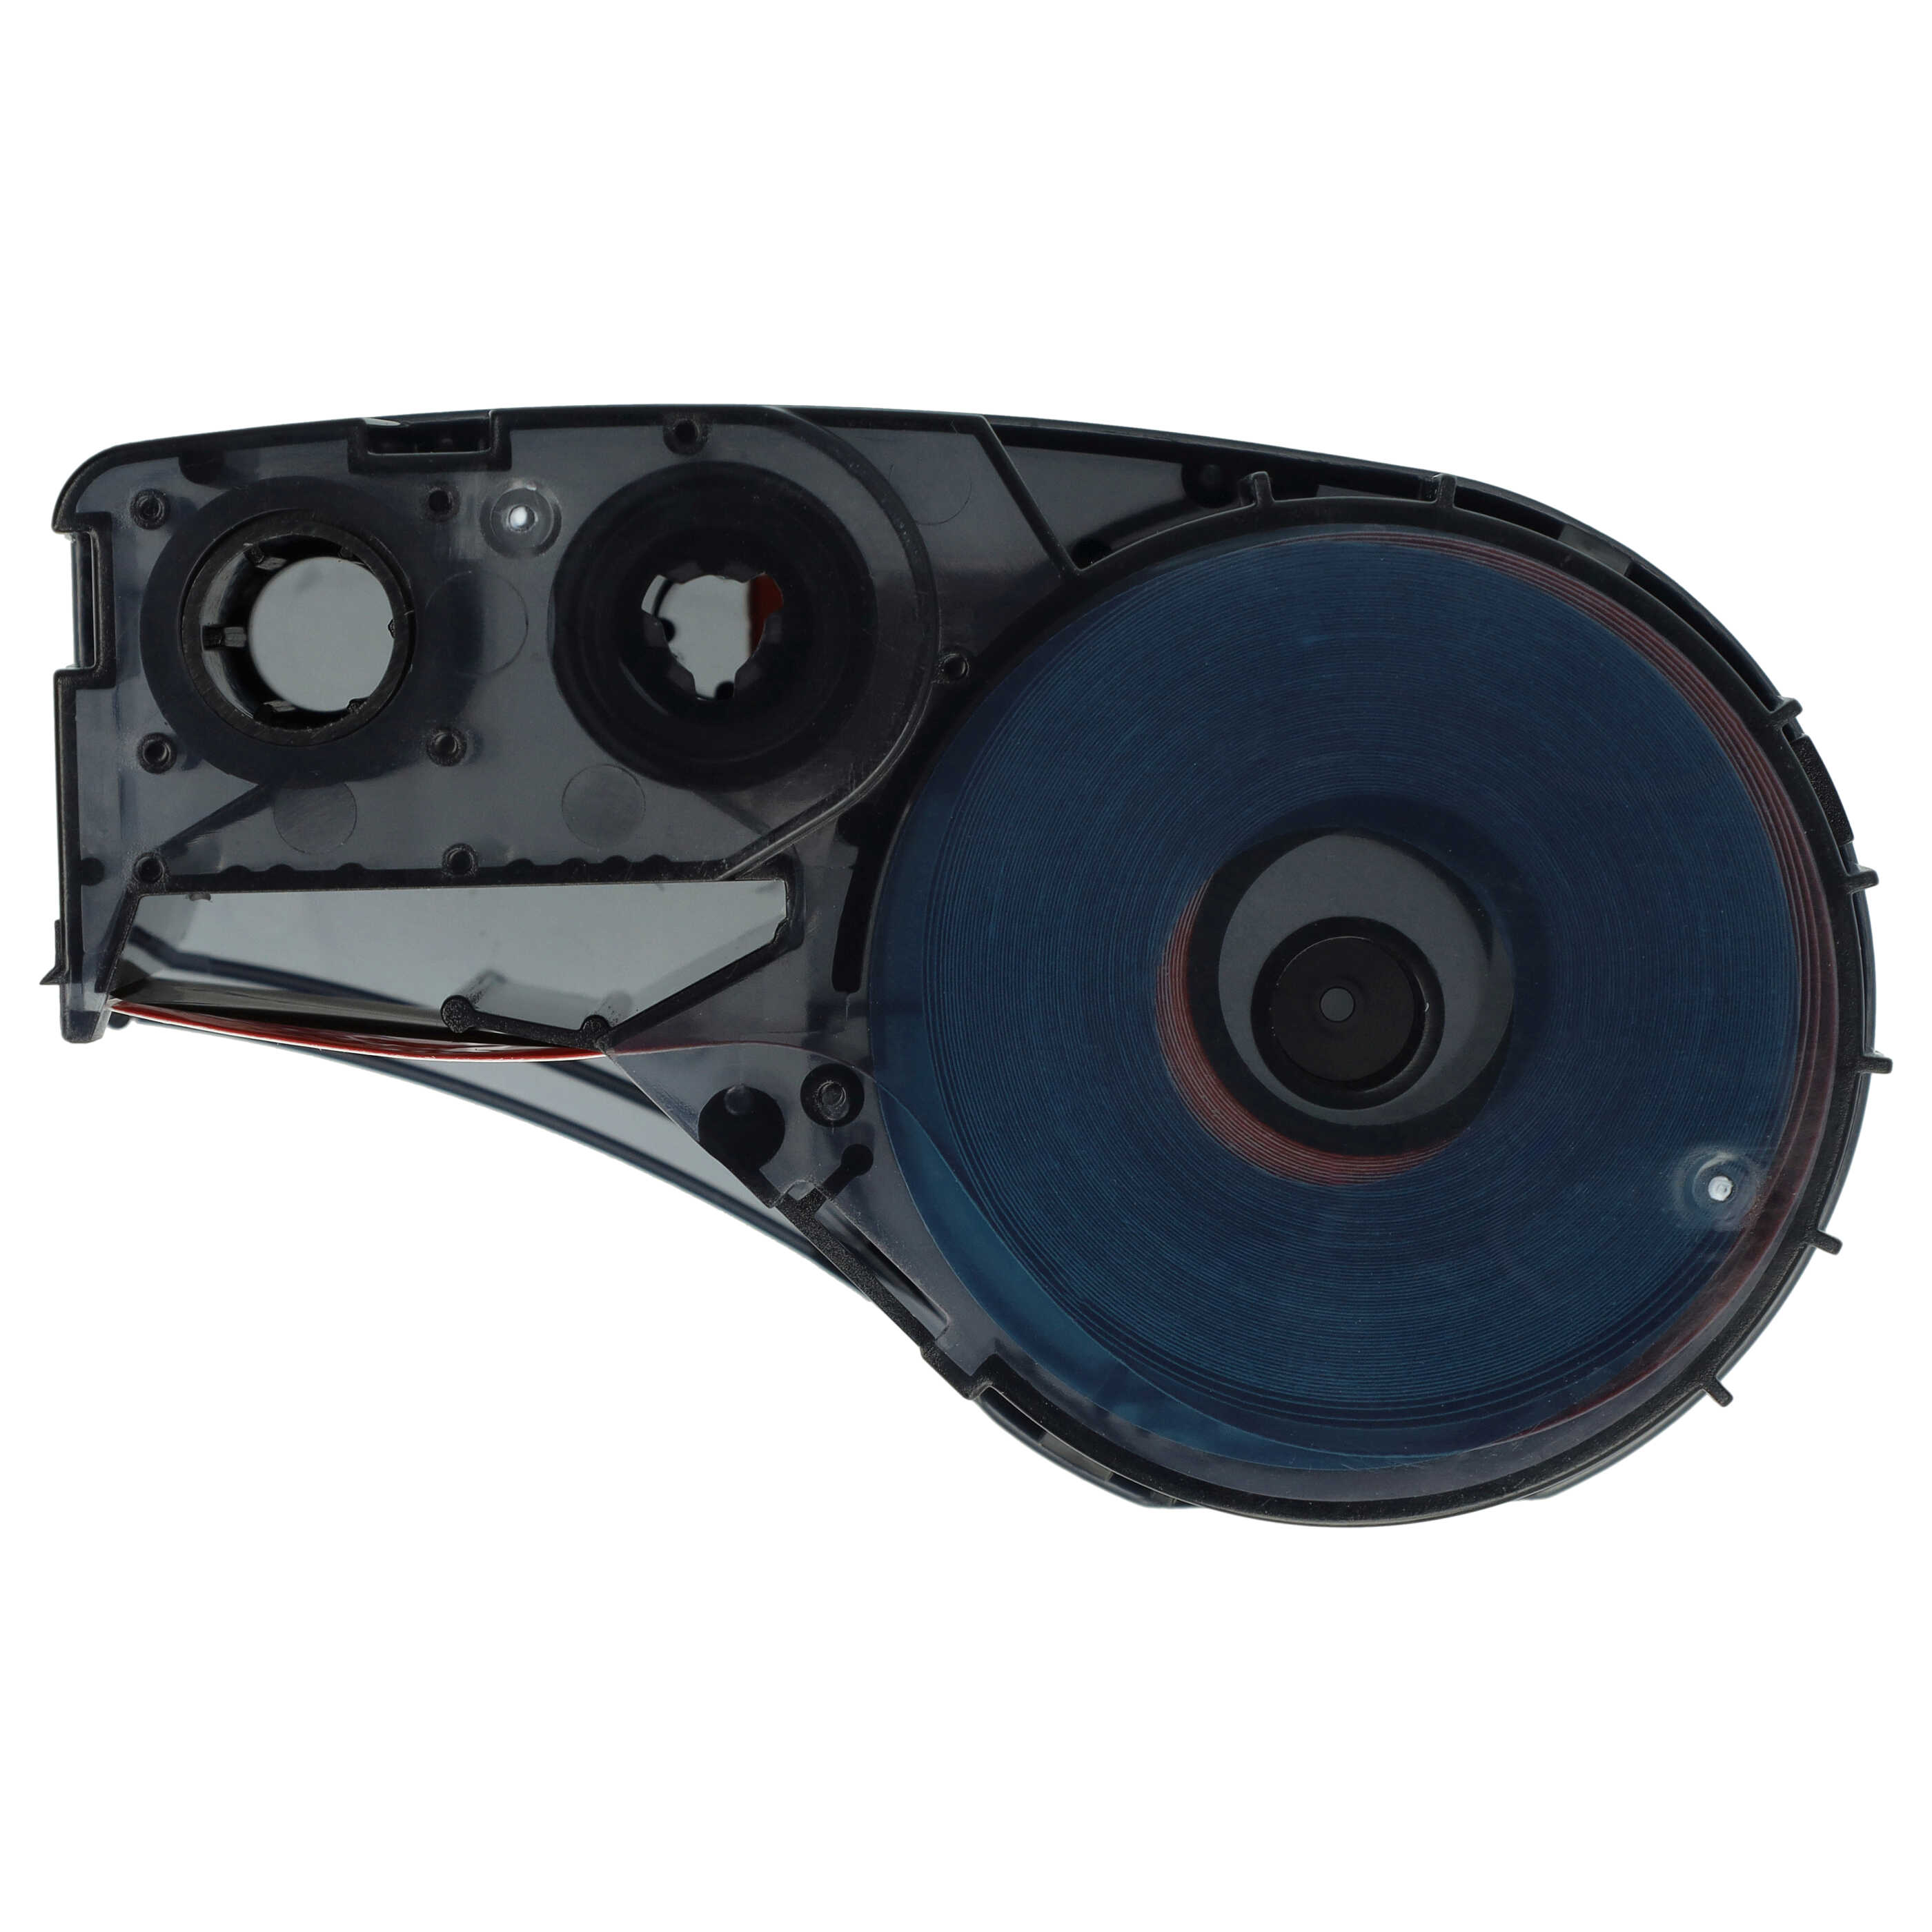 Cassette à ruban remplace Brady M21-750-595-RD-BK, M21-750-595-RD - 19,05mm lettrage Noir ruban Rouge